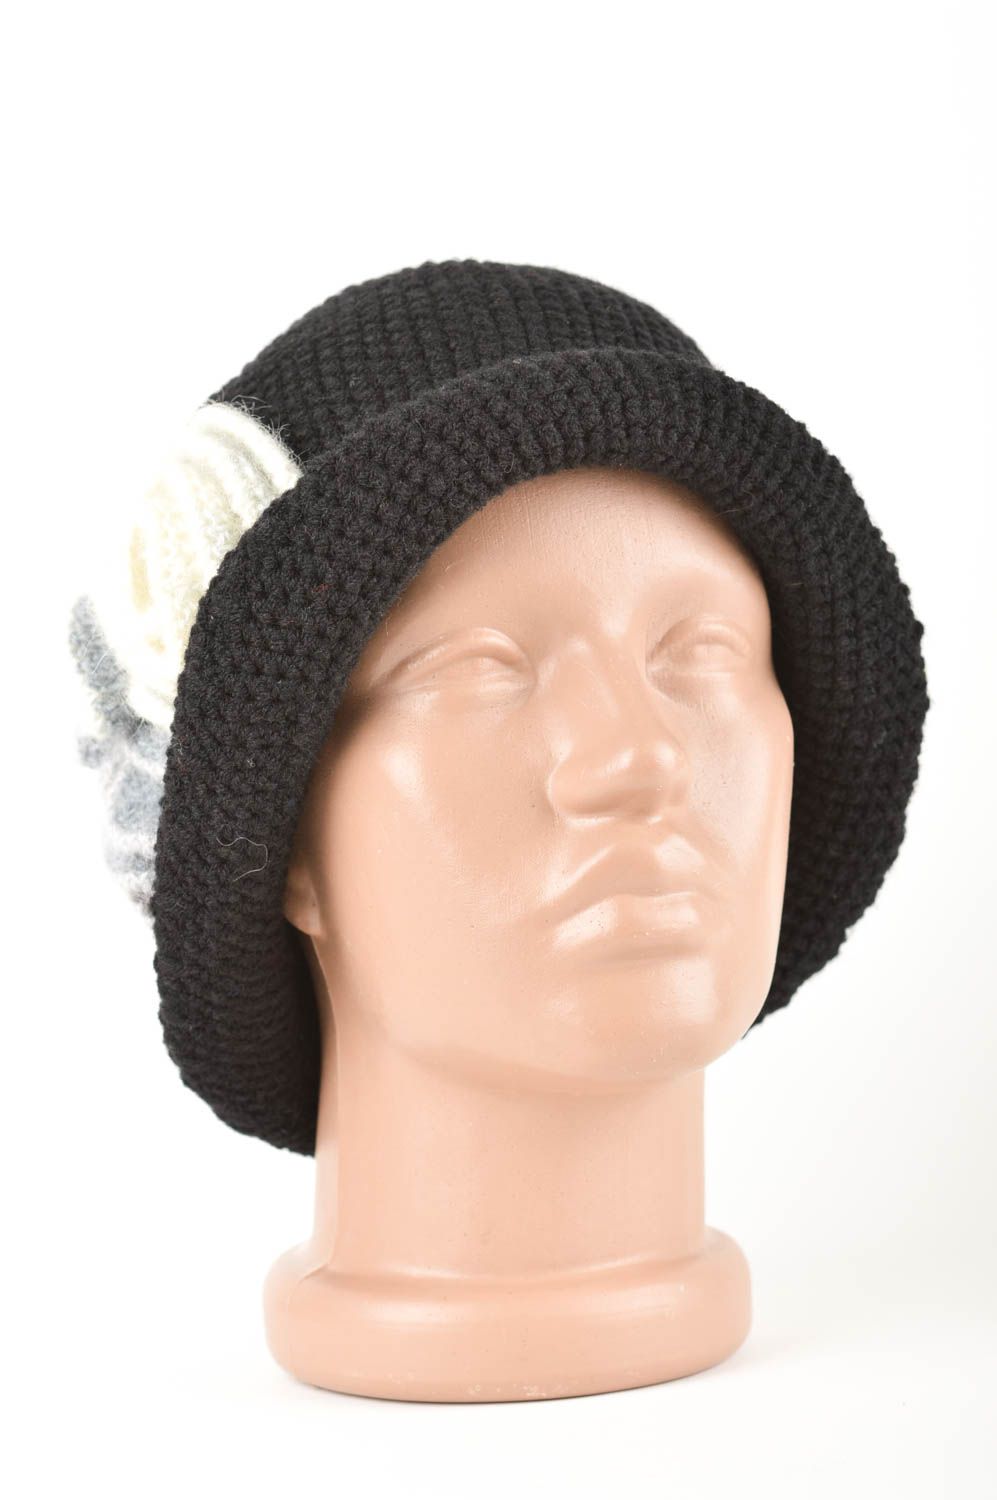 Оригинальная вязаная шапочка ручной работы женская шапка модная шерстяная шапка фото 1